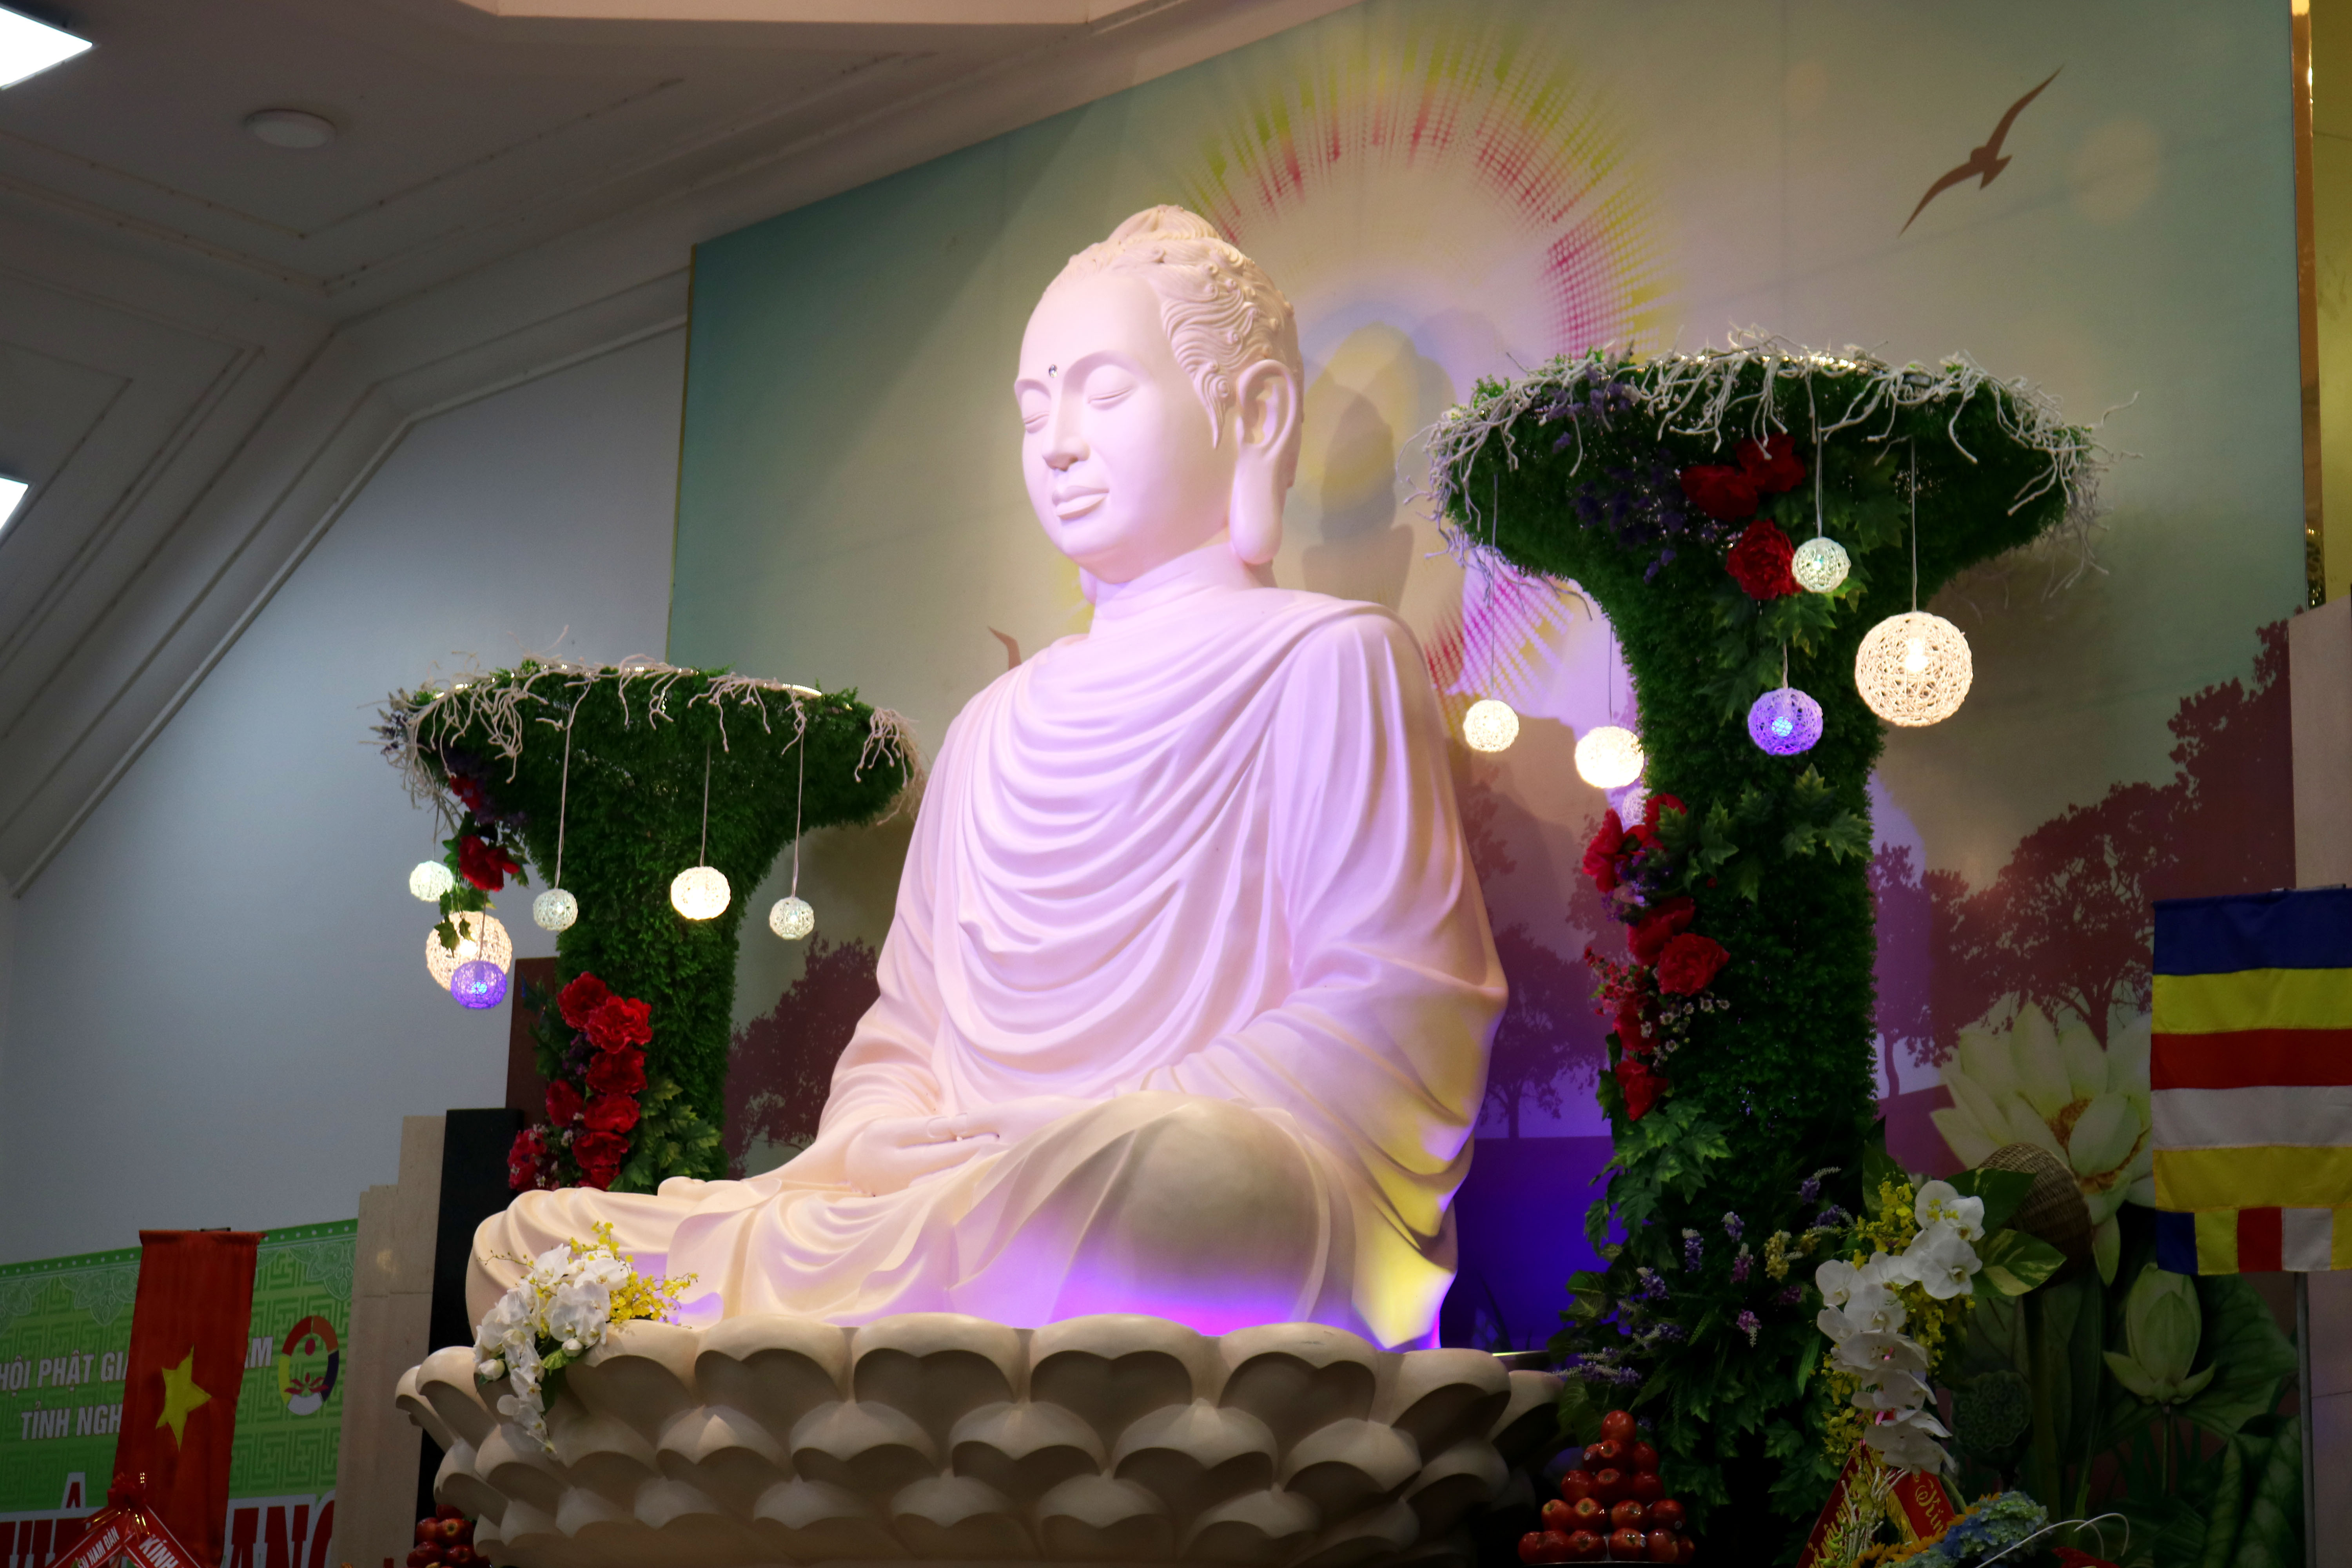 Cách đây hơn 2500 năm, thái tử Tất Đạt Đa ở Ấn Độ sau 6 năm tu khổ hạnh và 49 ngày đêm ngồi tĩnh tọa dưới gốc bồ đề, đã chứng đắc quả vị trở thành Phật Thích Ca Mâu Ni. Ngày 8 tháng 12 âm lịch trở thành ngày lễ Phật Thành Đạo.